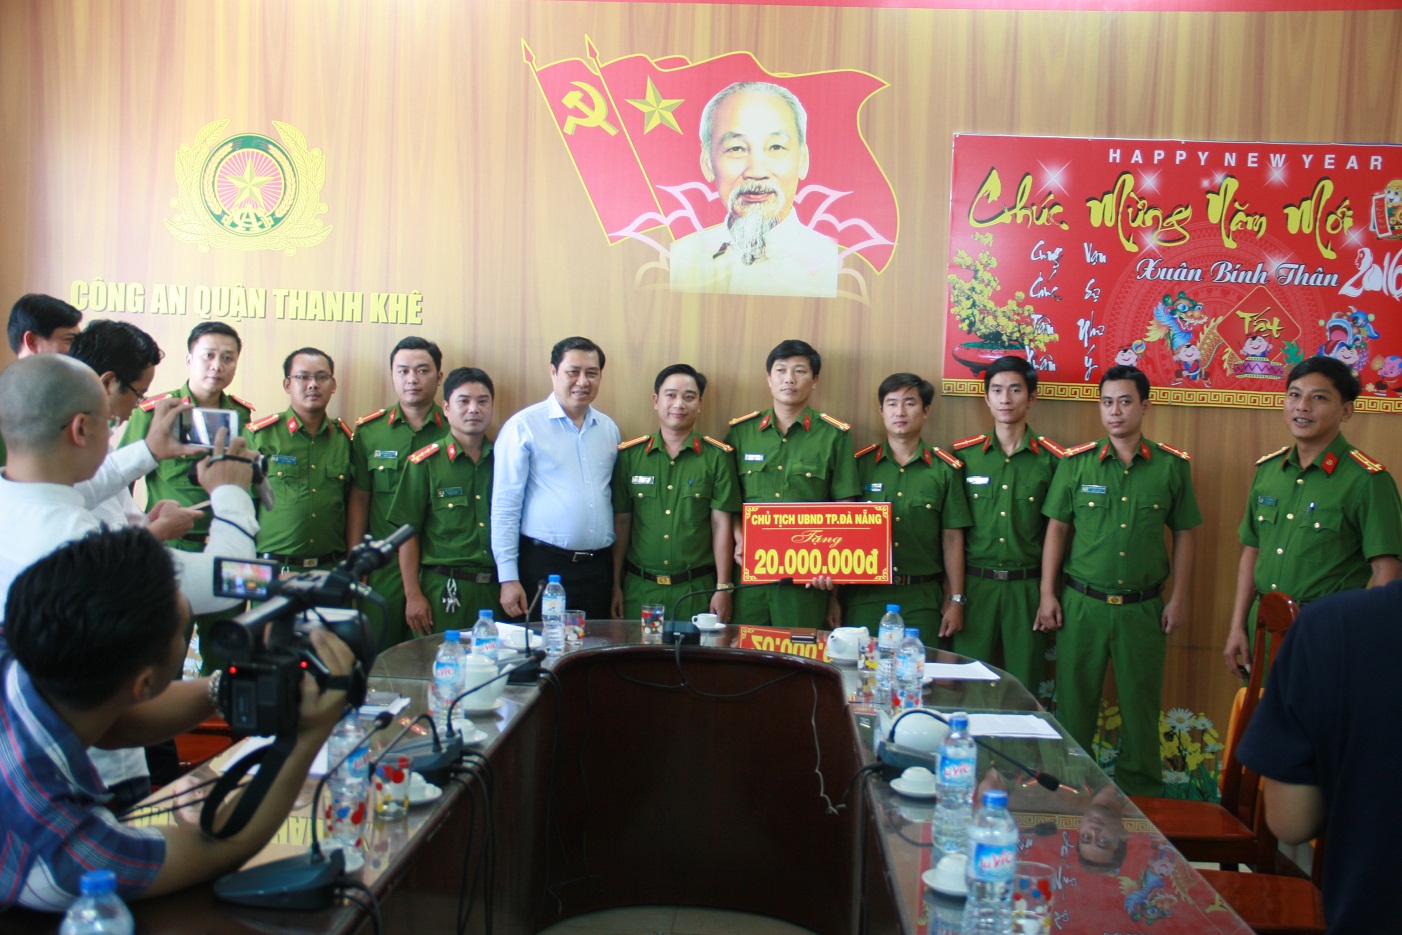 
Chủ tịch TP Đà Nẵng thưởng nóng cho cán bộ, chiến sĩ Công an quận Thanh Khê
